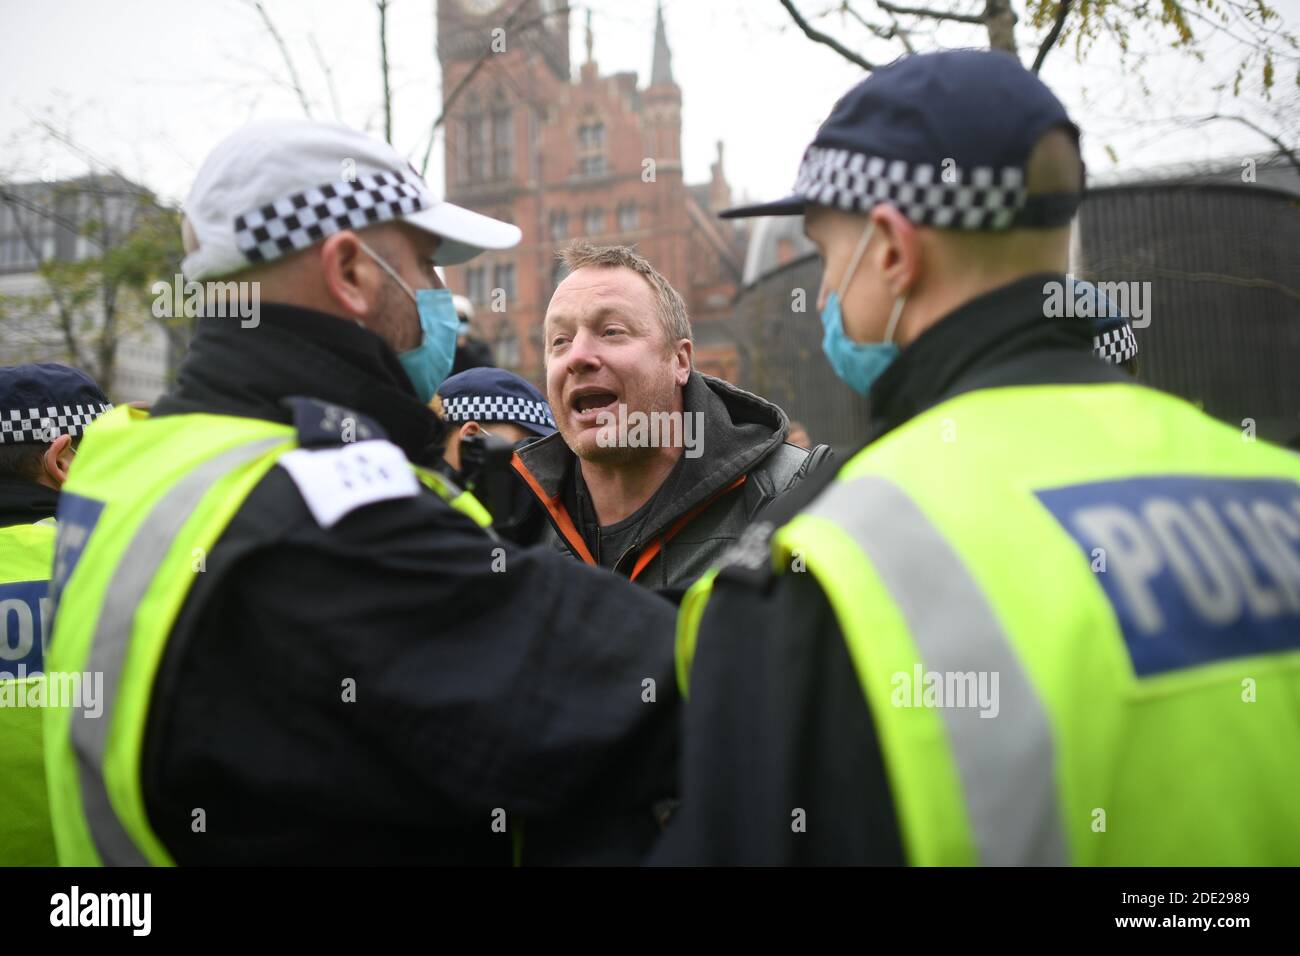 Un homme est détenu par la police lors d'une manifestation anti-verrouillage à Kings Cross St Pancras, Londres. Banque D'Images